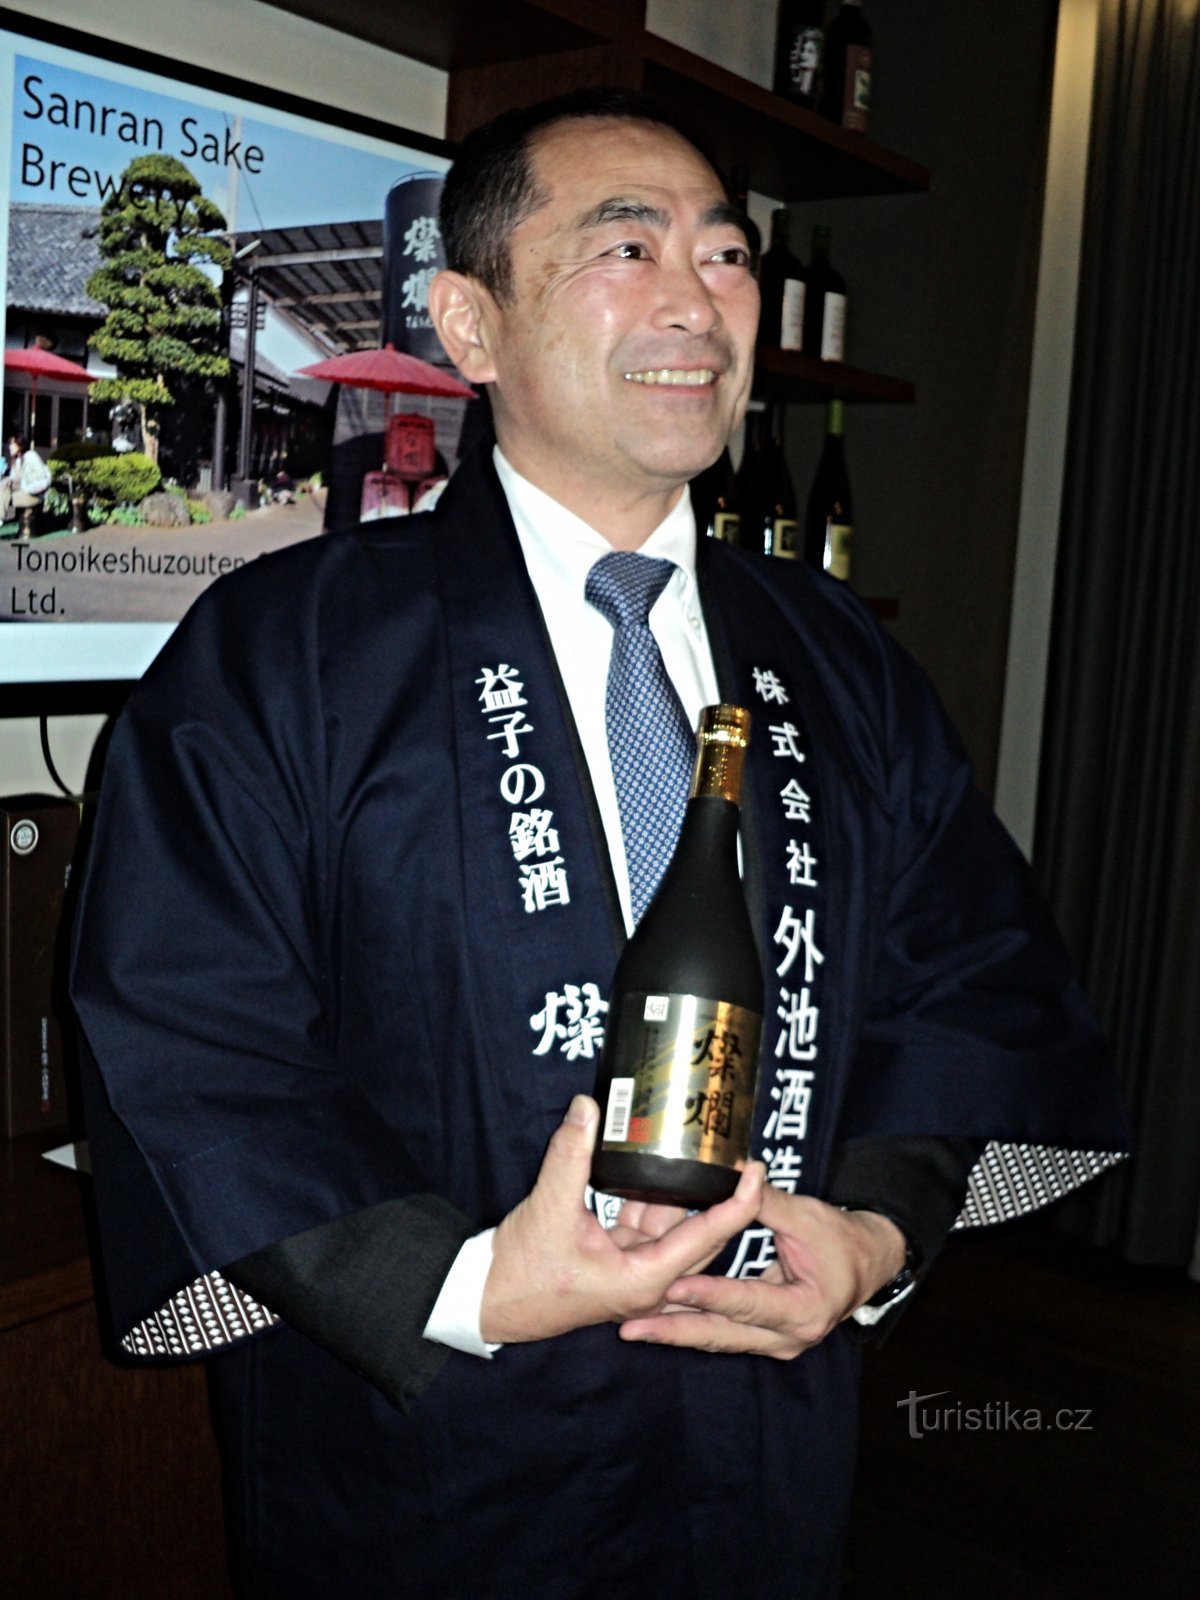 Shigeki Tonoike je proizvajalec sakeja tretje generacije.